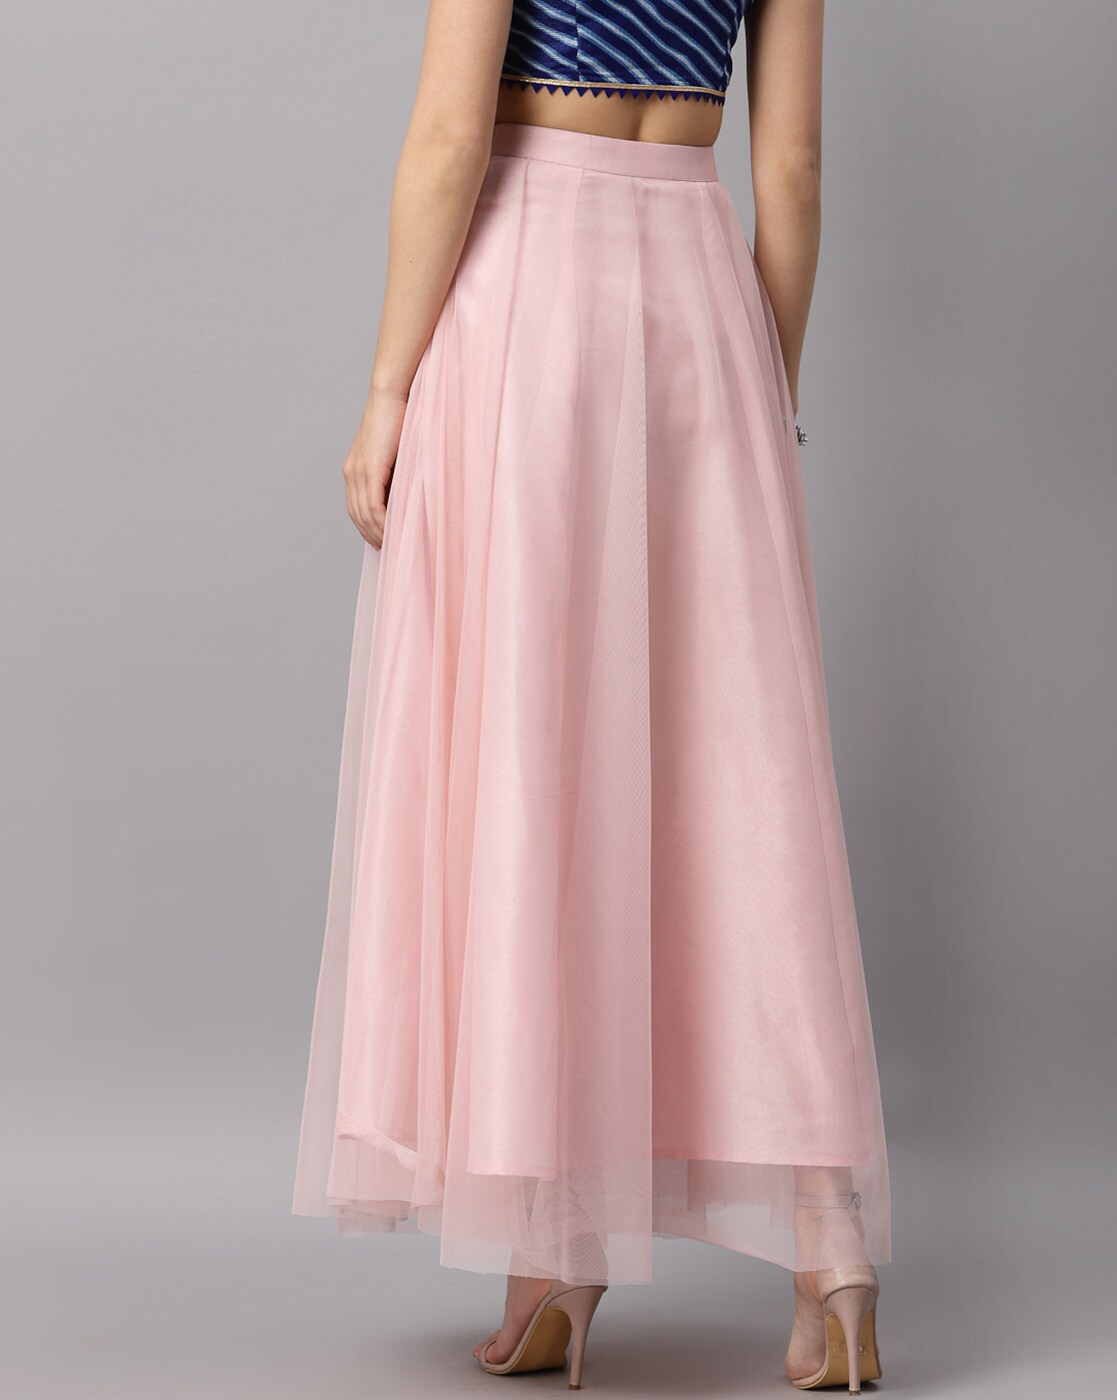 Light Pink Hip Skirt Fishtail Skirts Floor Length Long Wedding Skirt Zipper  Bridal Skirt Elegant Satin Skirt Beaded Tassel Gown